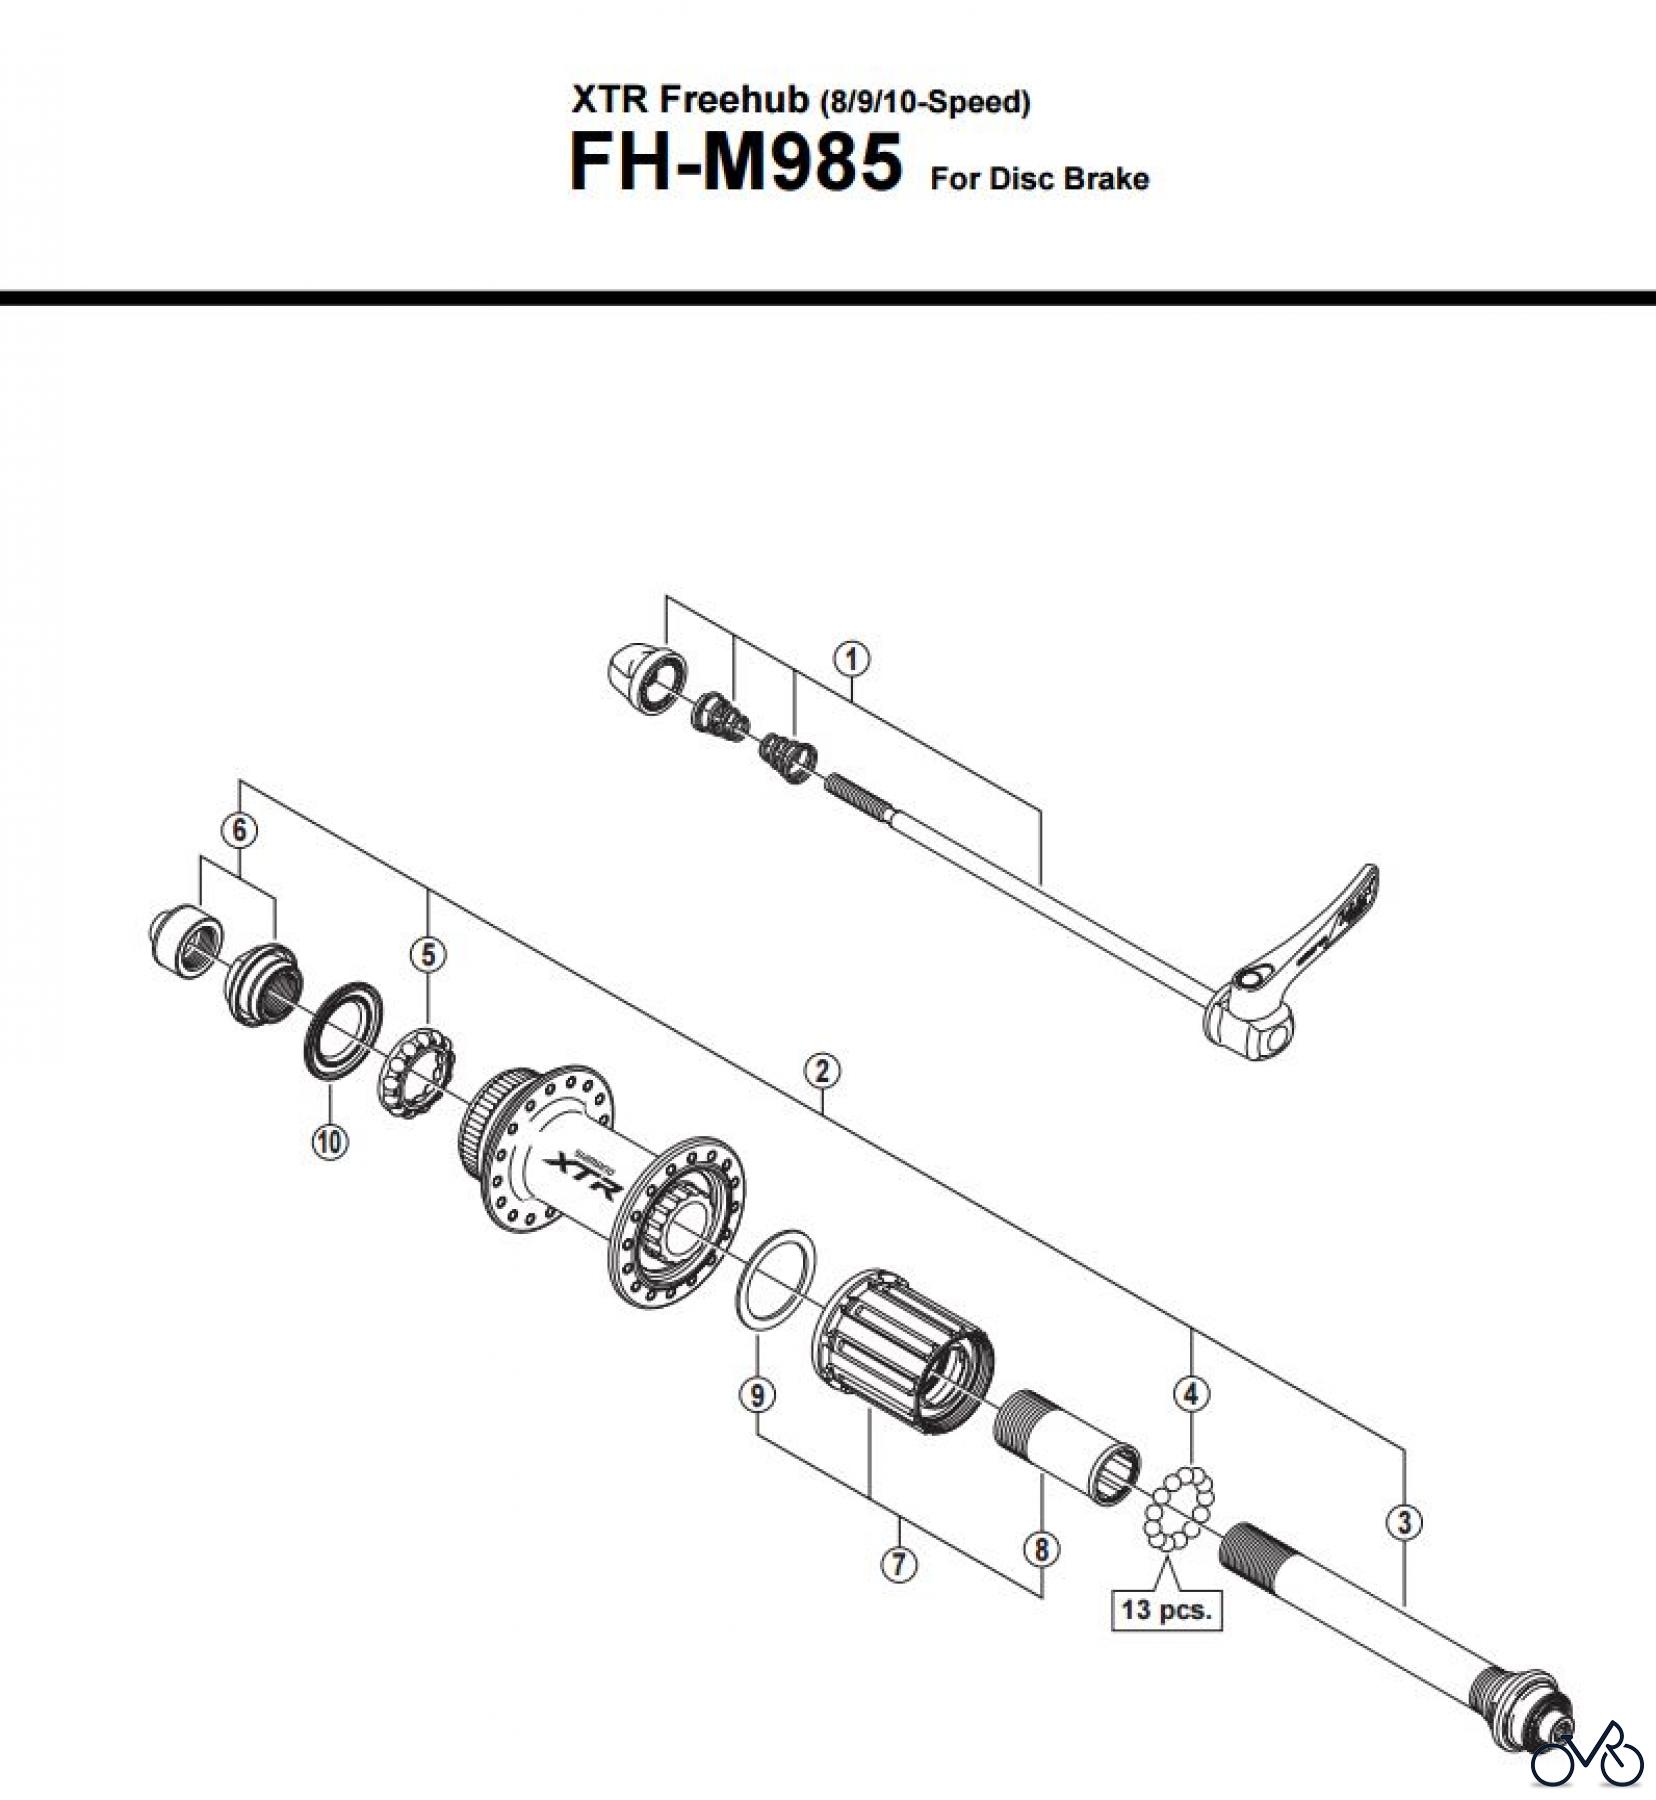  Shimano FH Free Hub - Freilaufnabe FH-M985 -3012  XTR Freehub (8/9/10-Speed)